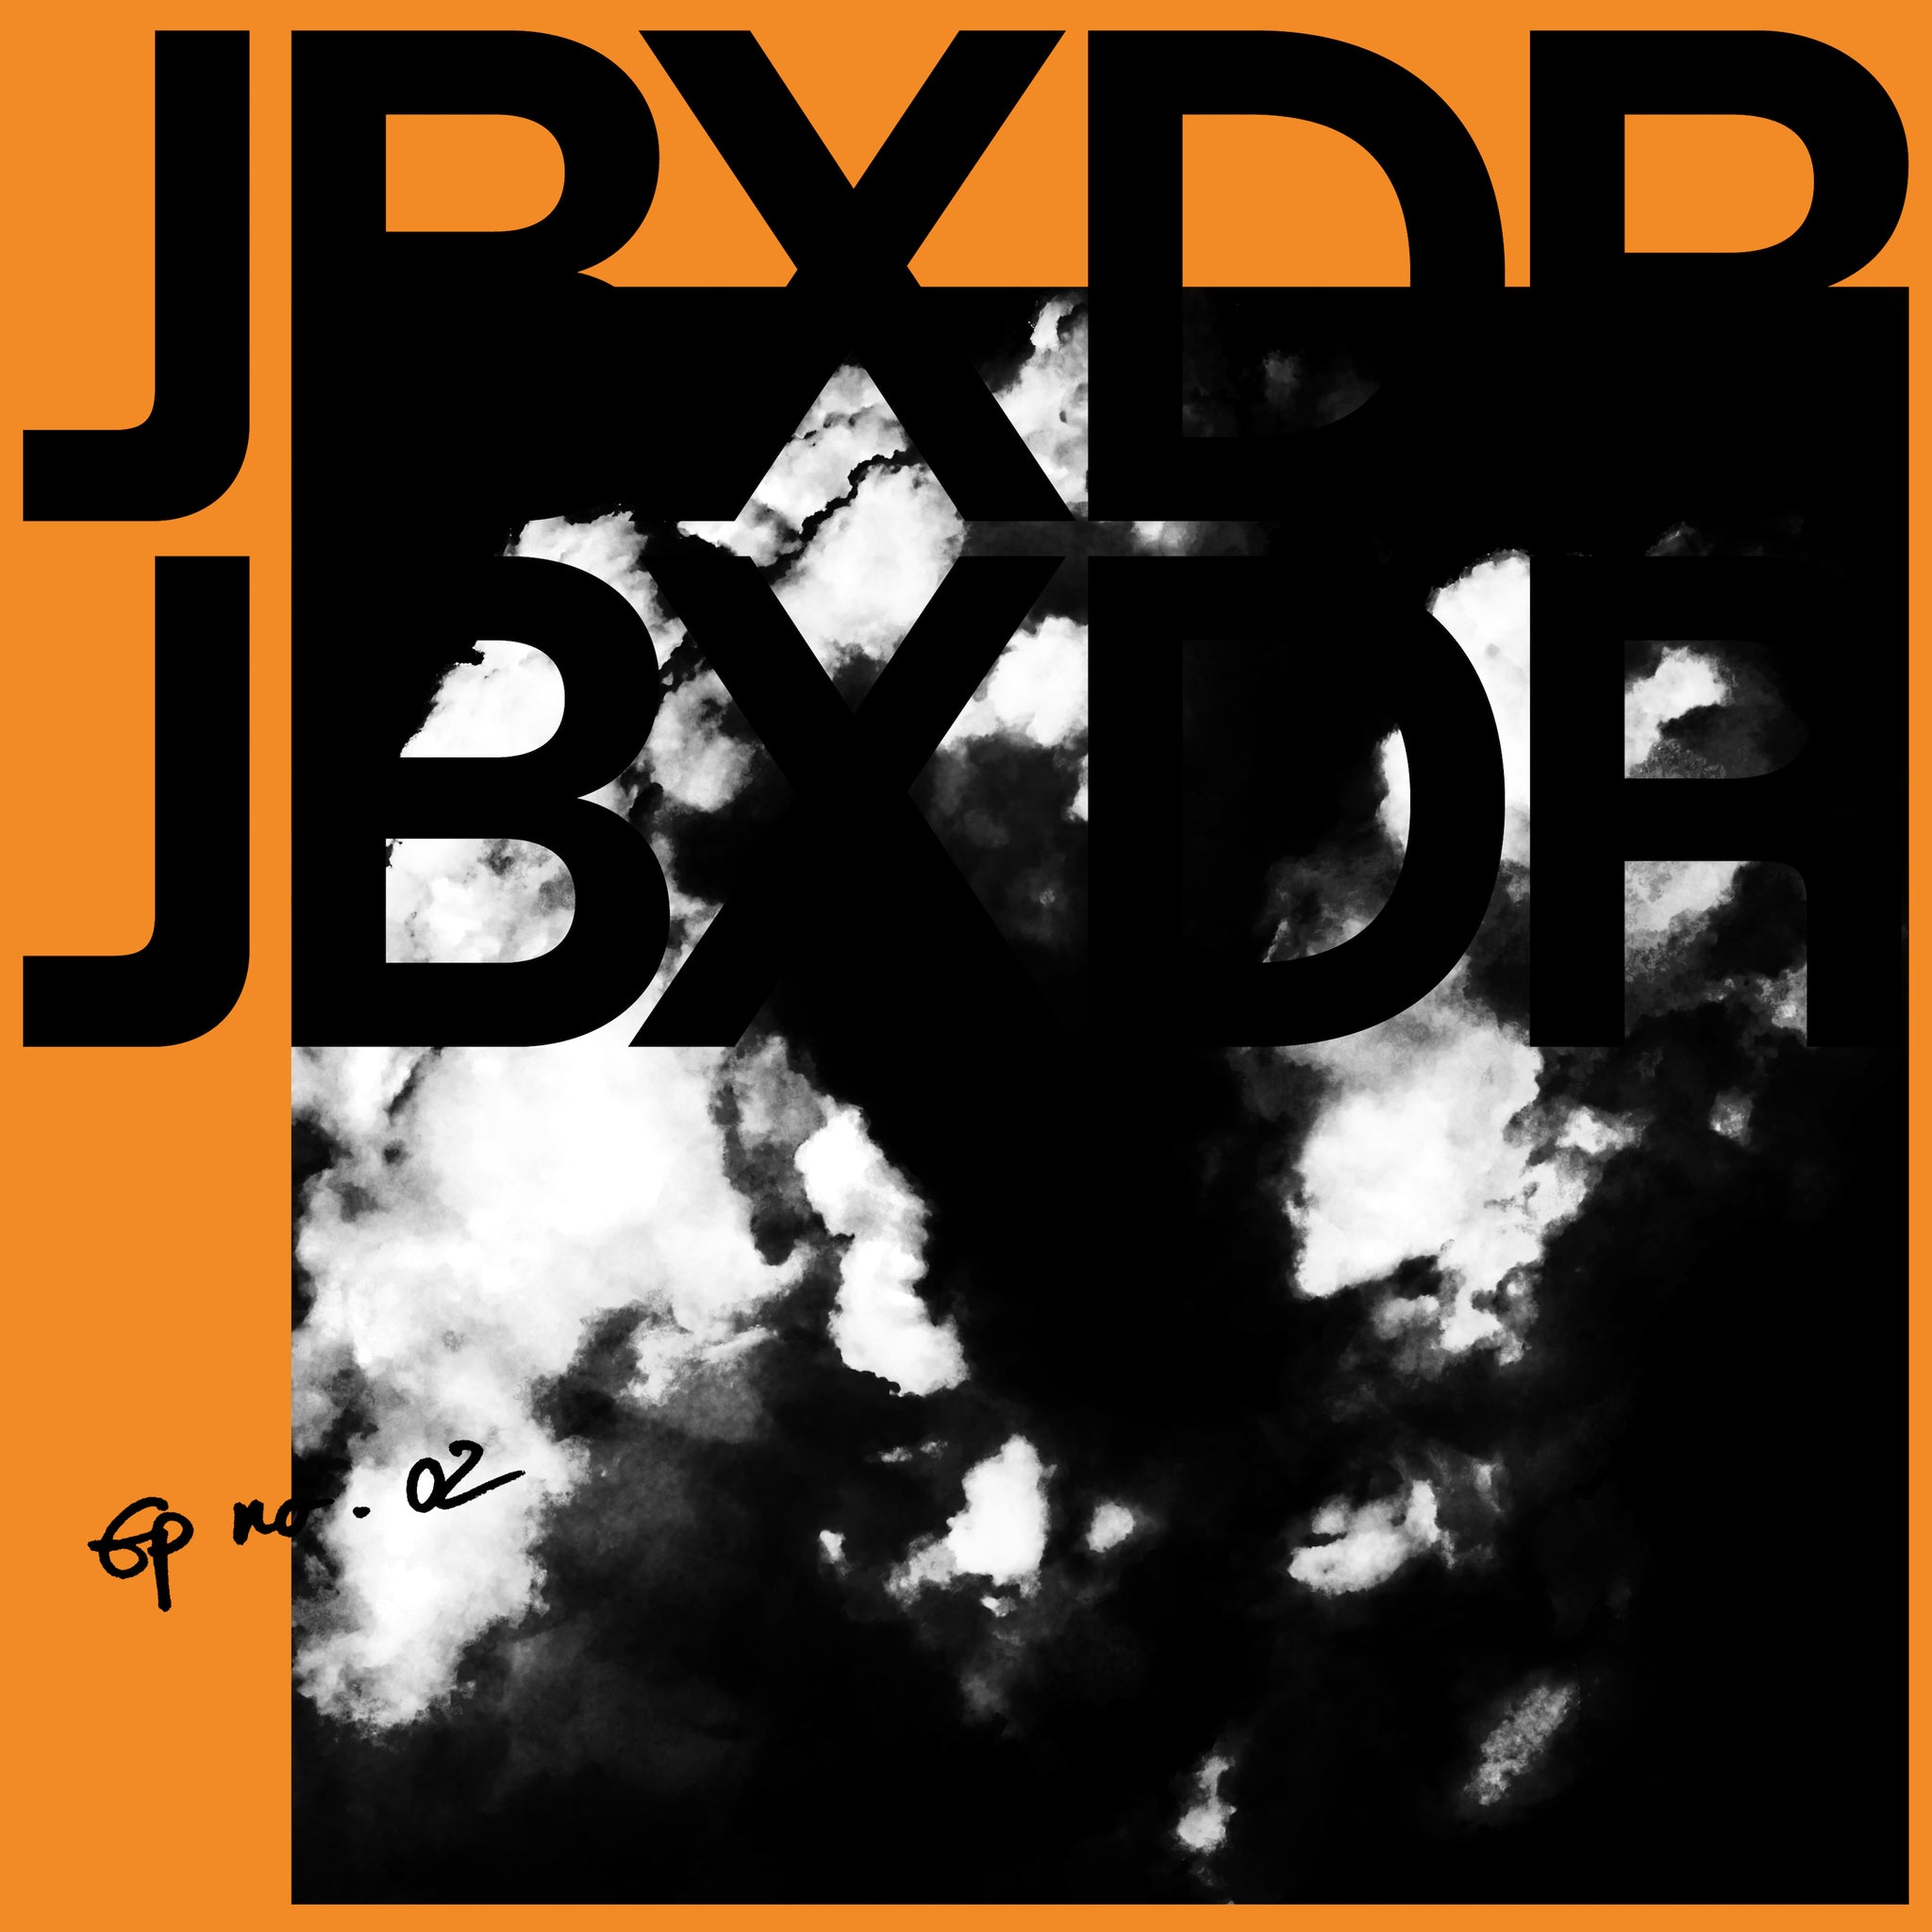 JBXDR - EP No 02 (CD)